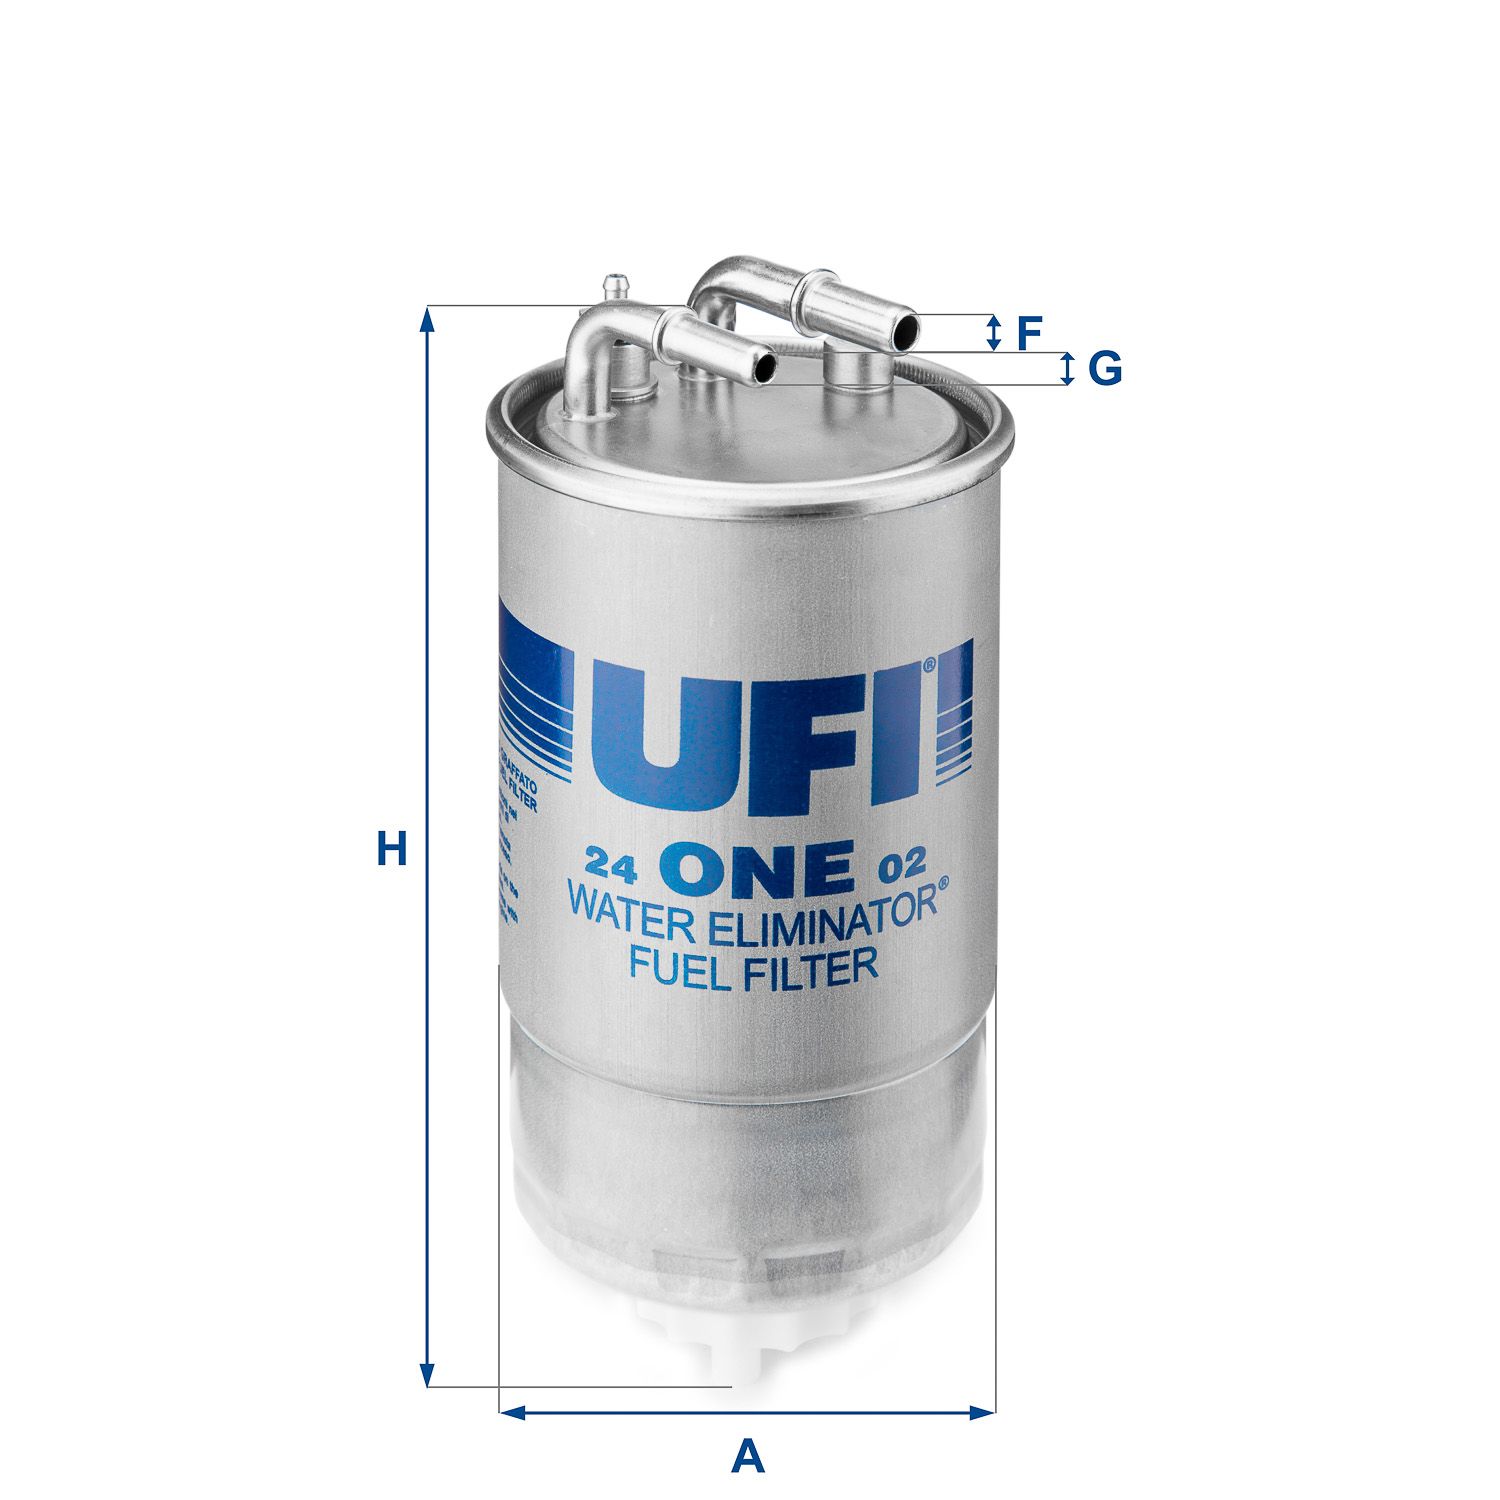 Palivový filtr UFI 24.ONE.02